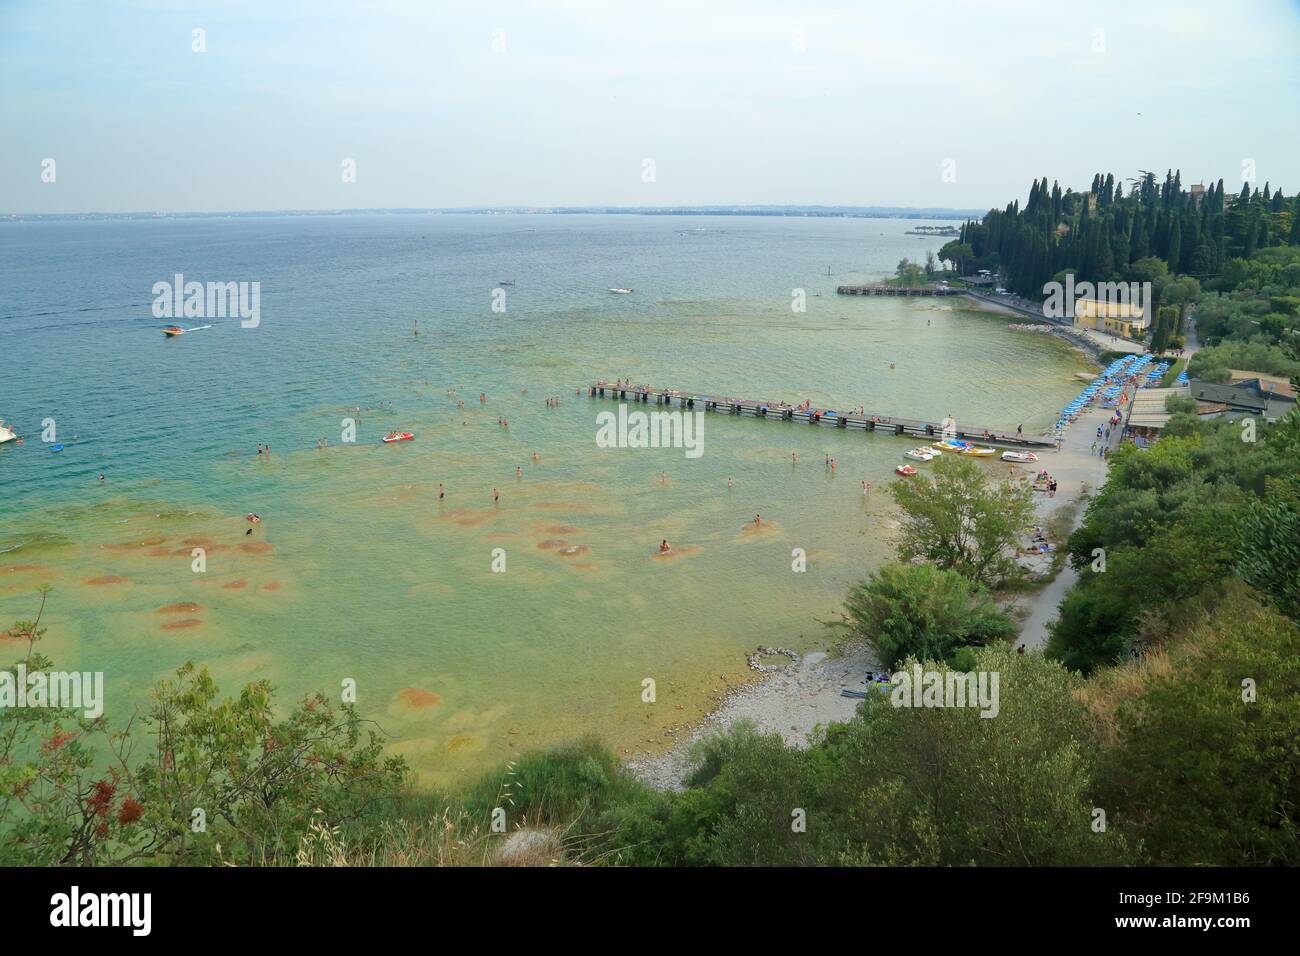 Sirmione beach, Lido delle Bionde, Il Pontile di Sirmione. Lake Garda, Lago di Garda, Gardasee, Italy Stock Photo